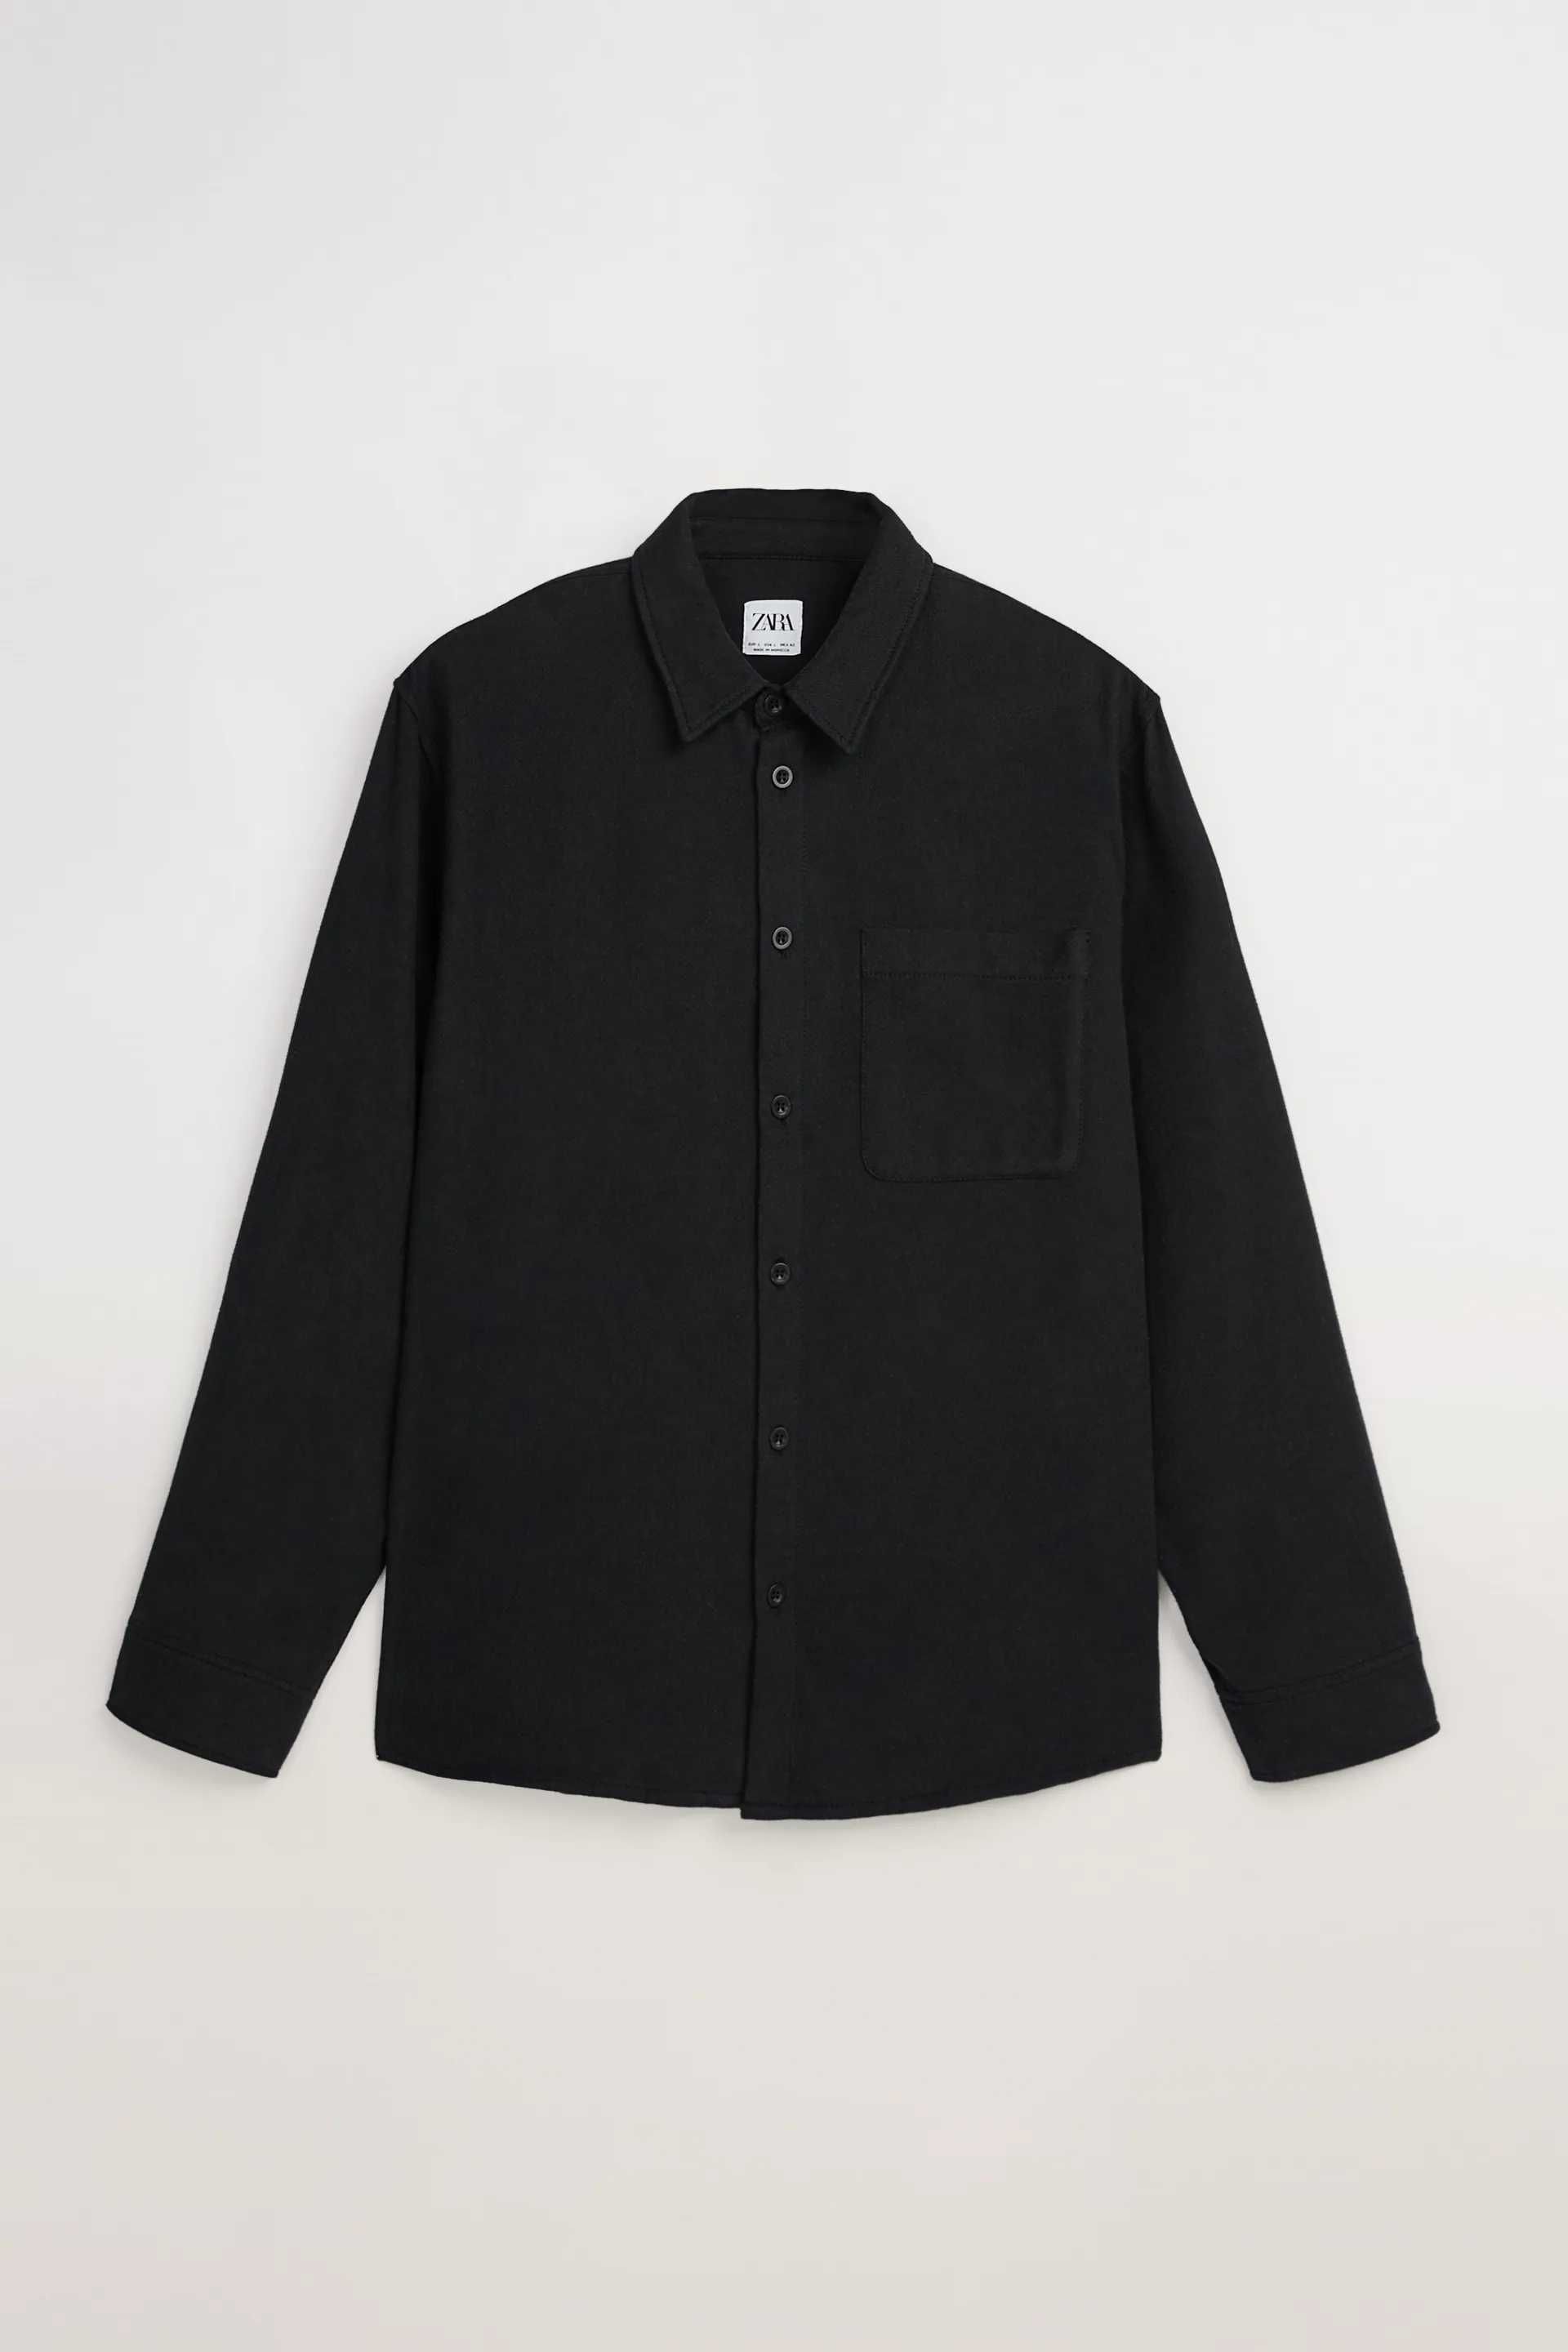 Flanelowa kurtka koszulowa Zara rozmiar 42 L